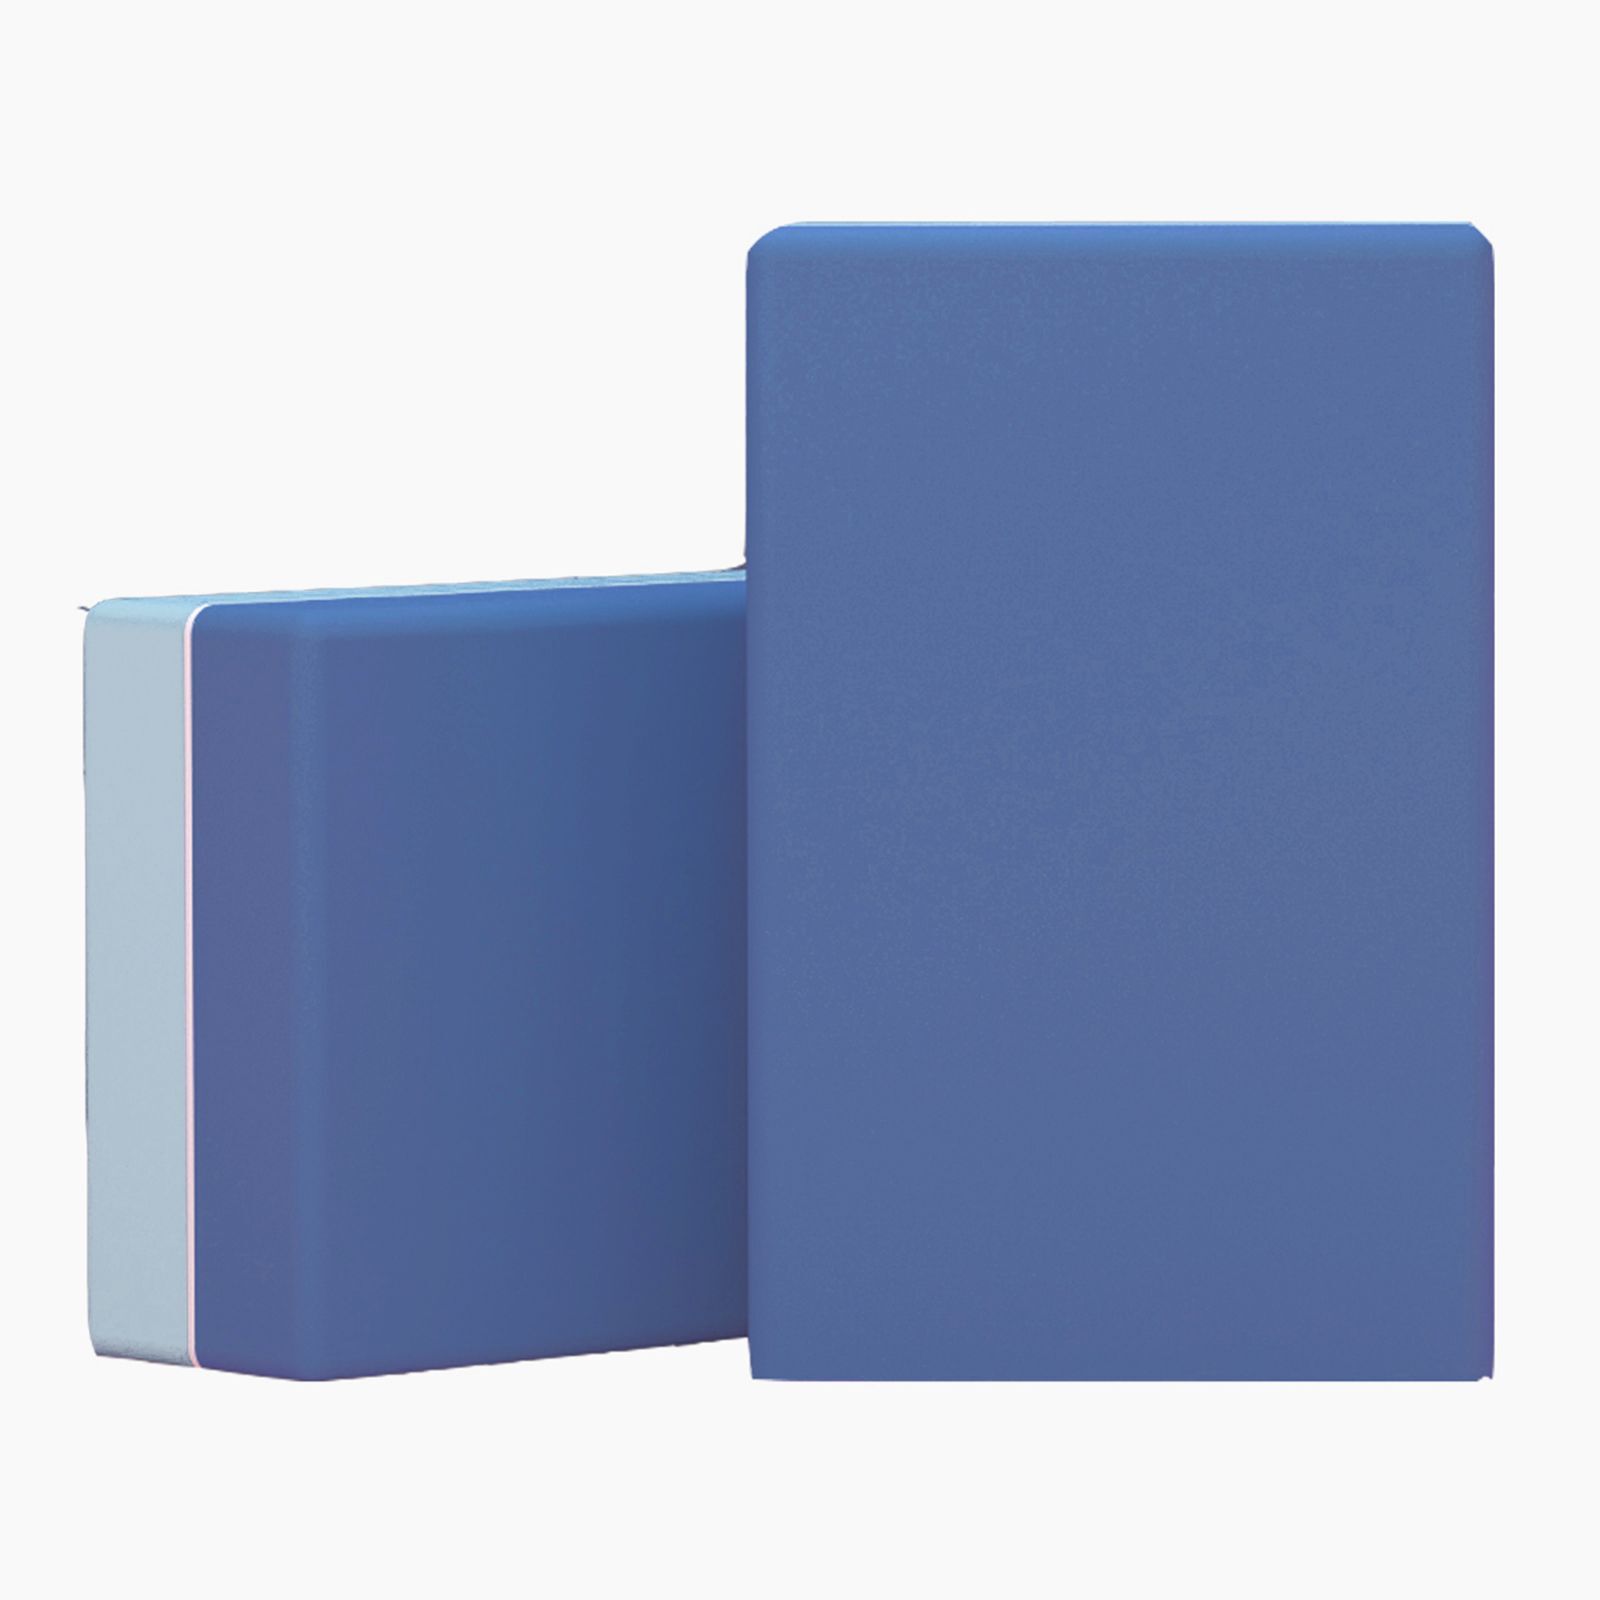 Блок для йоги и фитнеса UNIX Fit (200 г) 23 х 15 х 7 см, 1 шт, голубой (2 оттенка) UNIX Fit™ Блоки для йоги и фитнеса